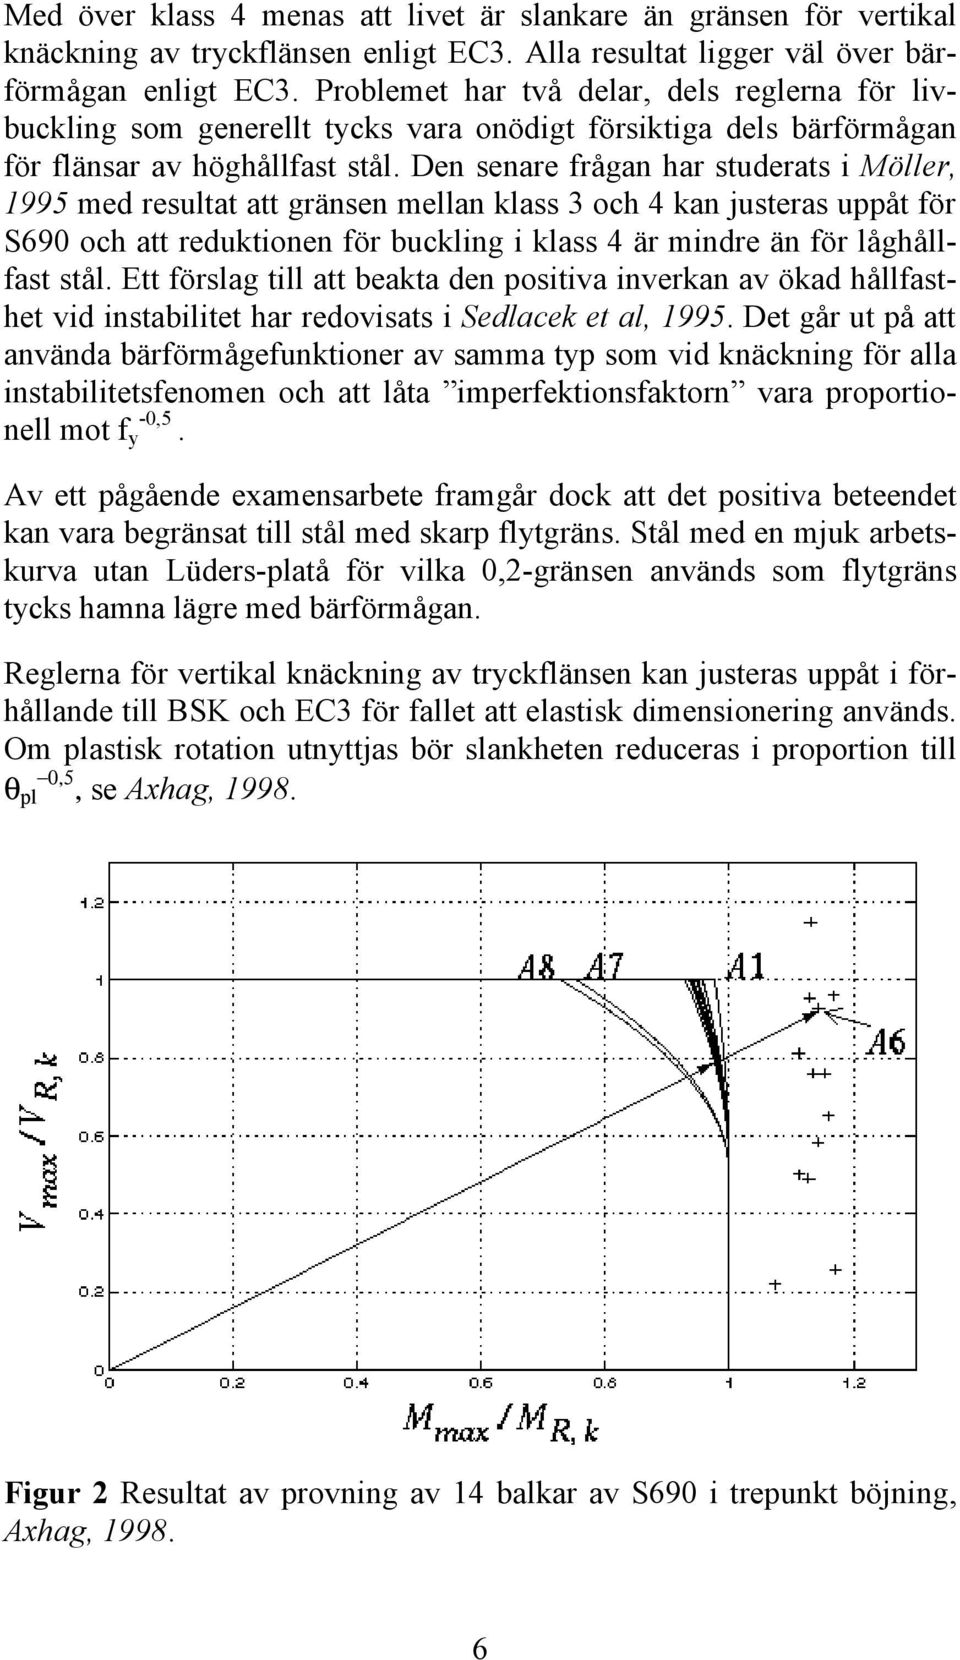 Den senare frågan har studerats i Möller, 1995 med resultat att gränsen mellan klass 3 och 4 kan justeras uppåt för S690 och att reduktionen för buckling i klass 4 är mindre än för låghållfast stål.